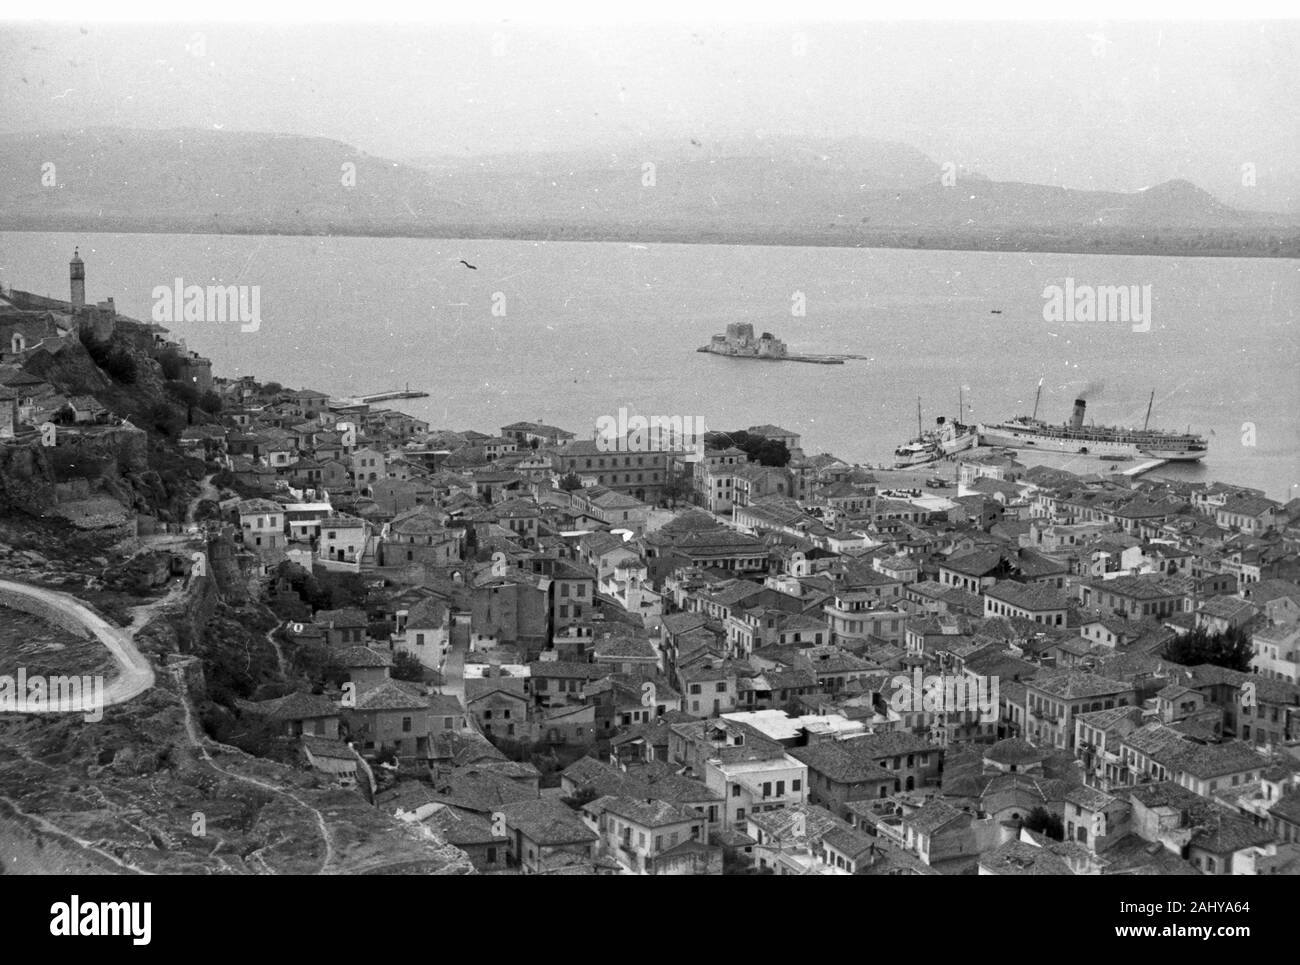 Blick auf die Stadt Nauplia oder Nafplion, Griechenland Peloponnes 1950er Jahre. Vista della città Nauplia o Nafplion, Grecia Peloponneso 1950s. Foto Stock